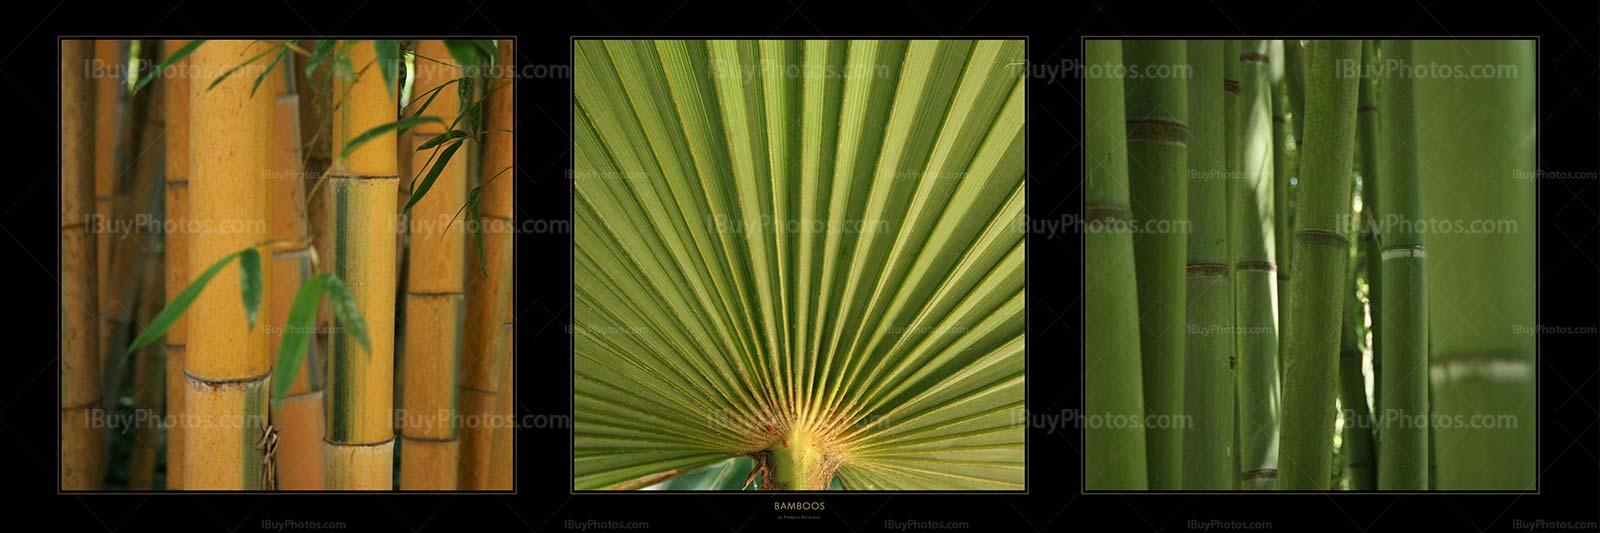 Bamboos Panorama 001